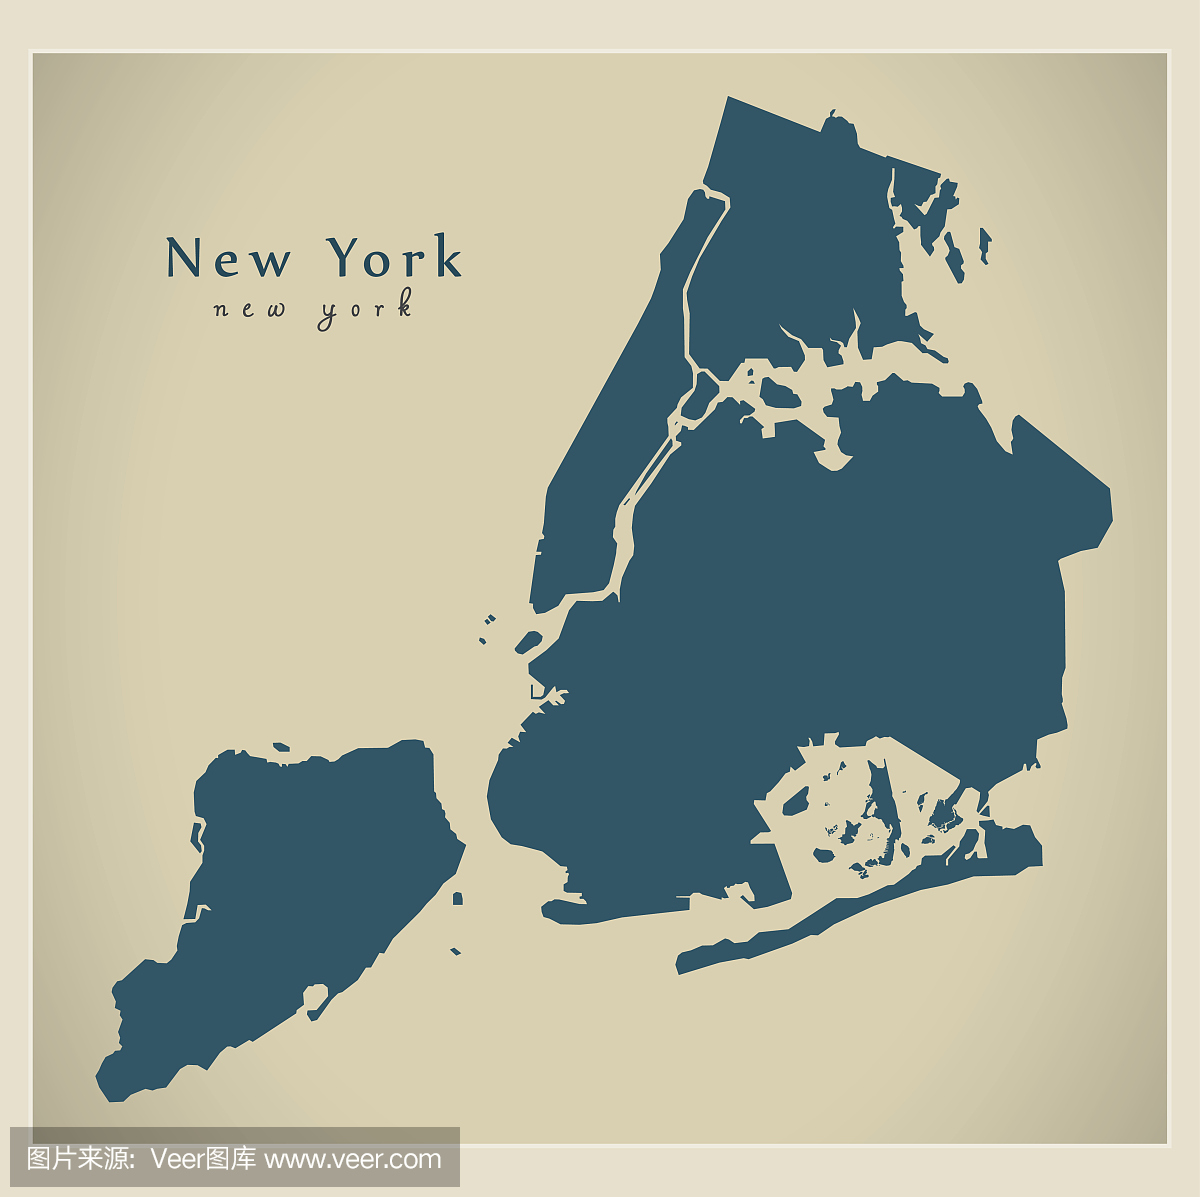 现代城市地图 - 美国纽约市